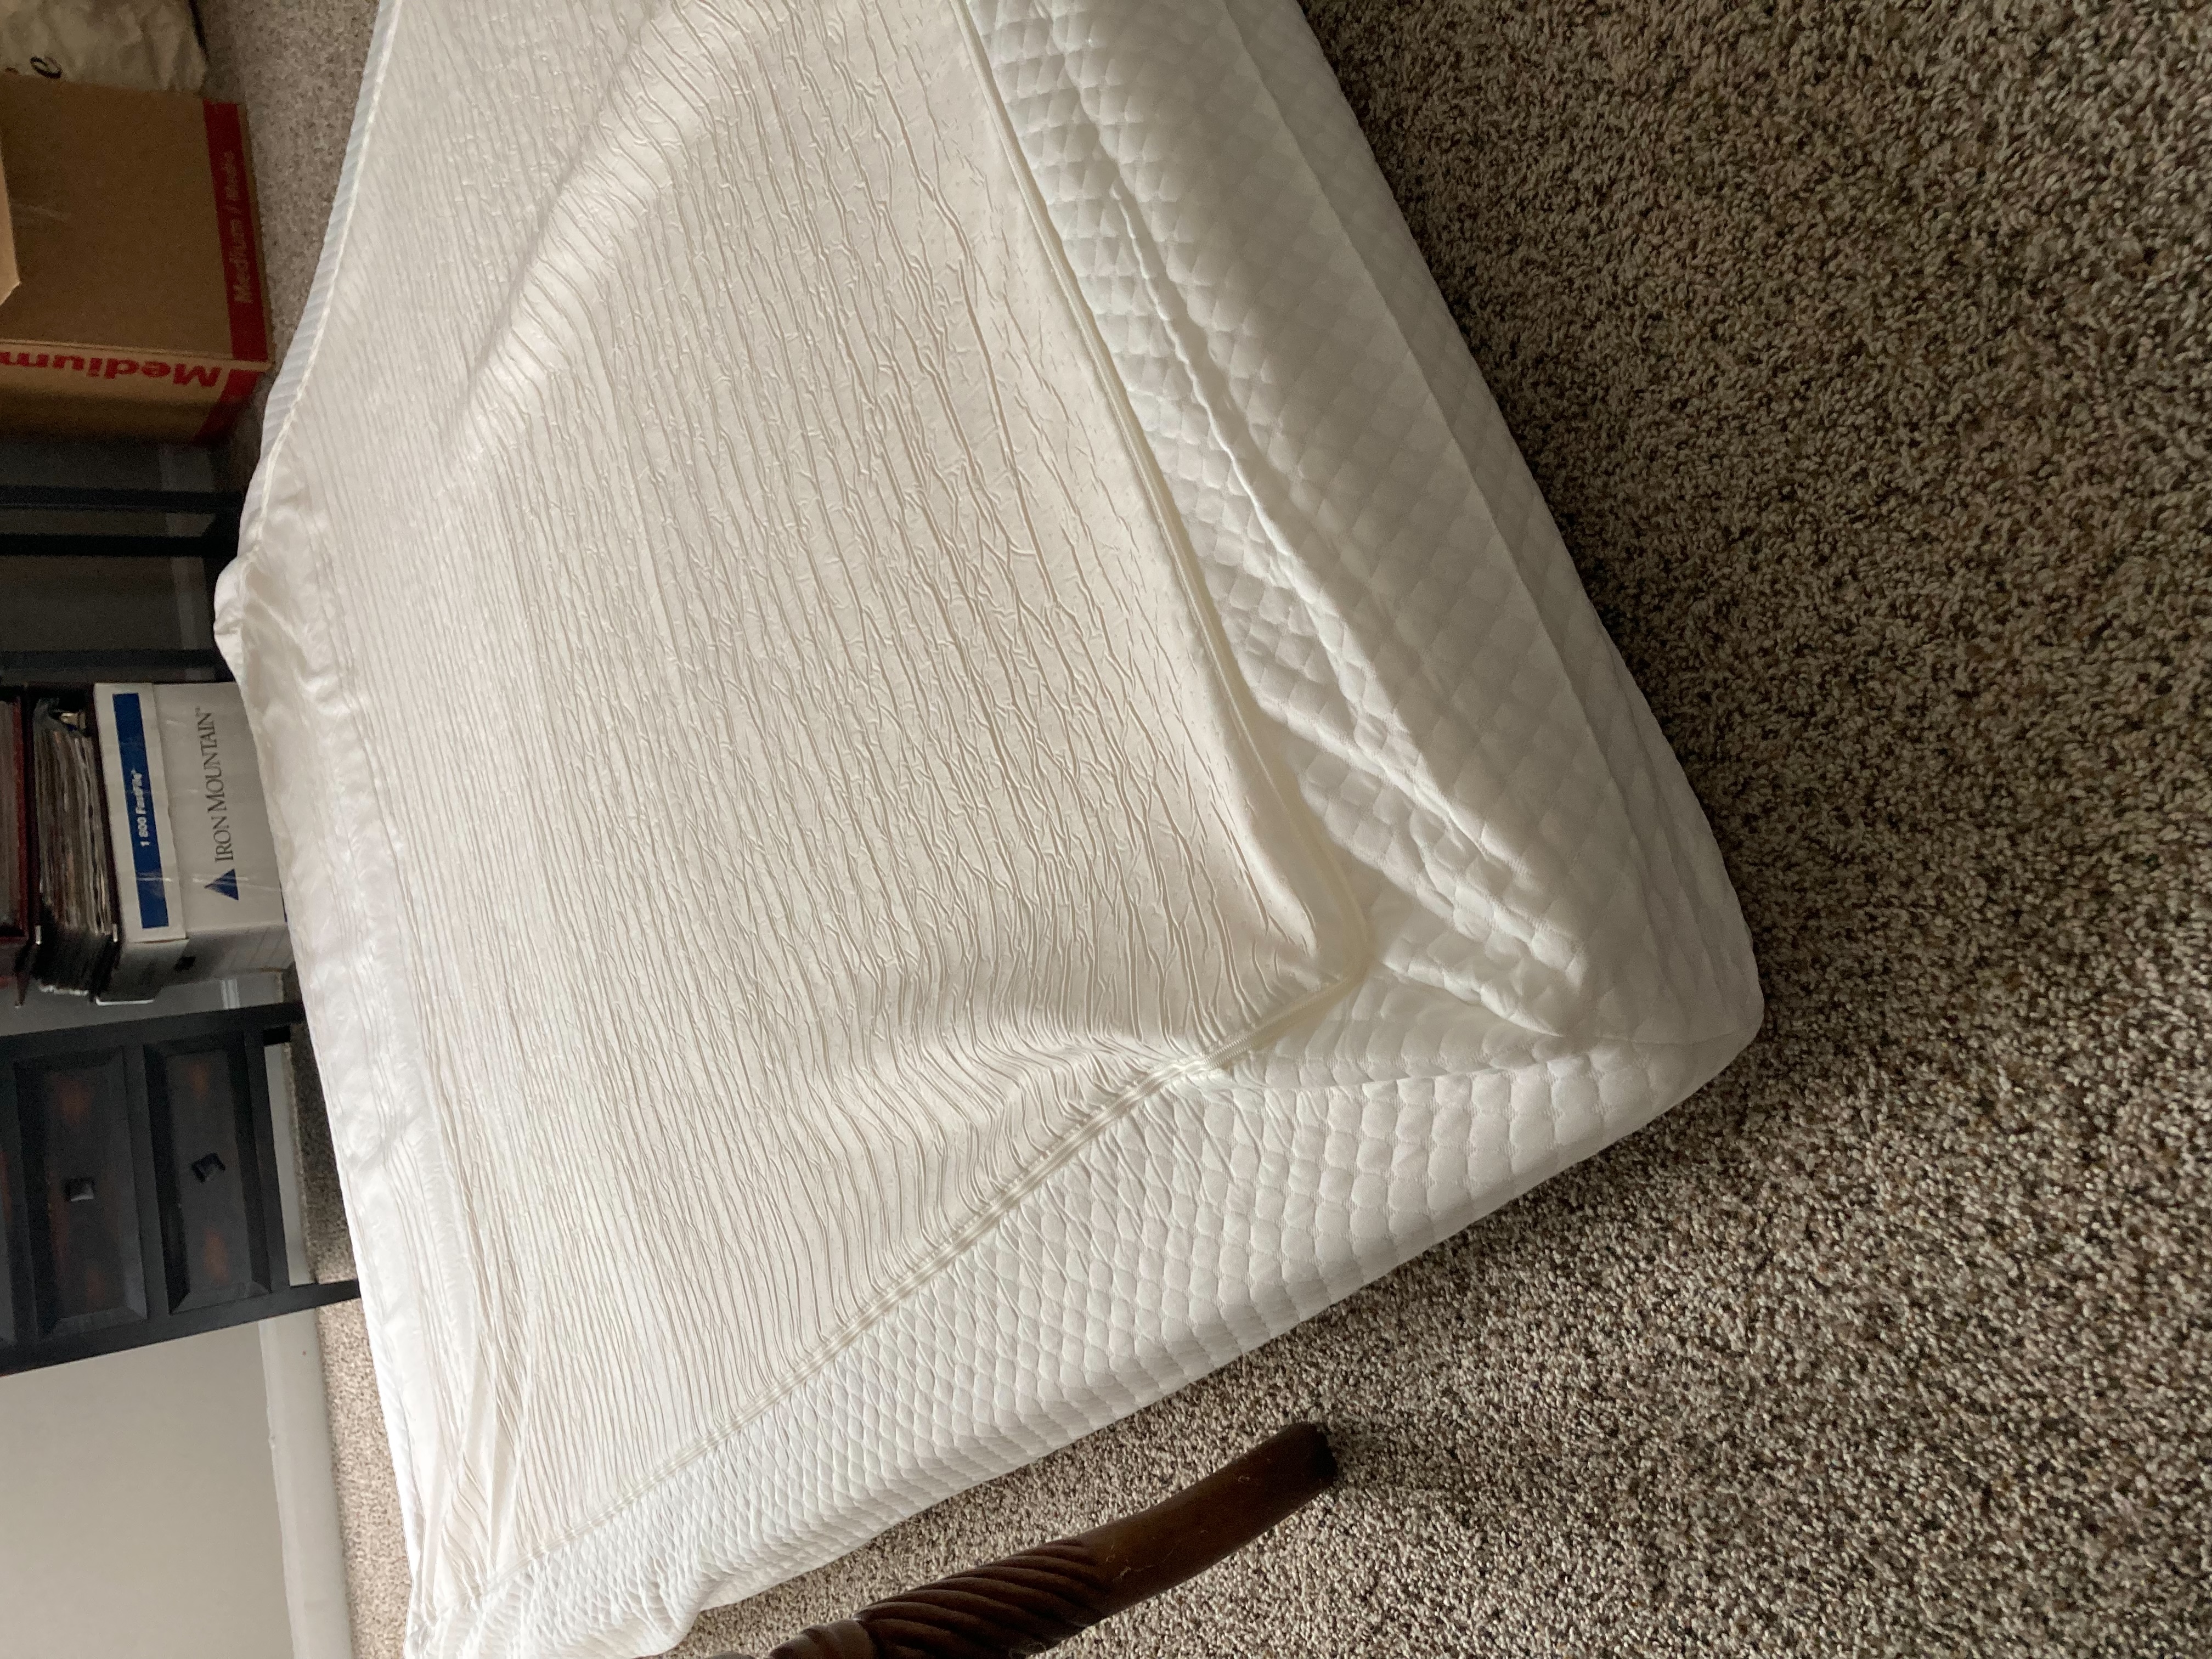 Ordered 10 inch mattress,  received 5 inch mattress